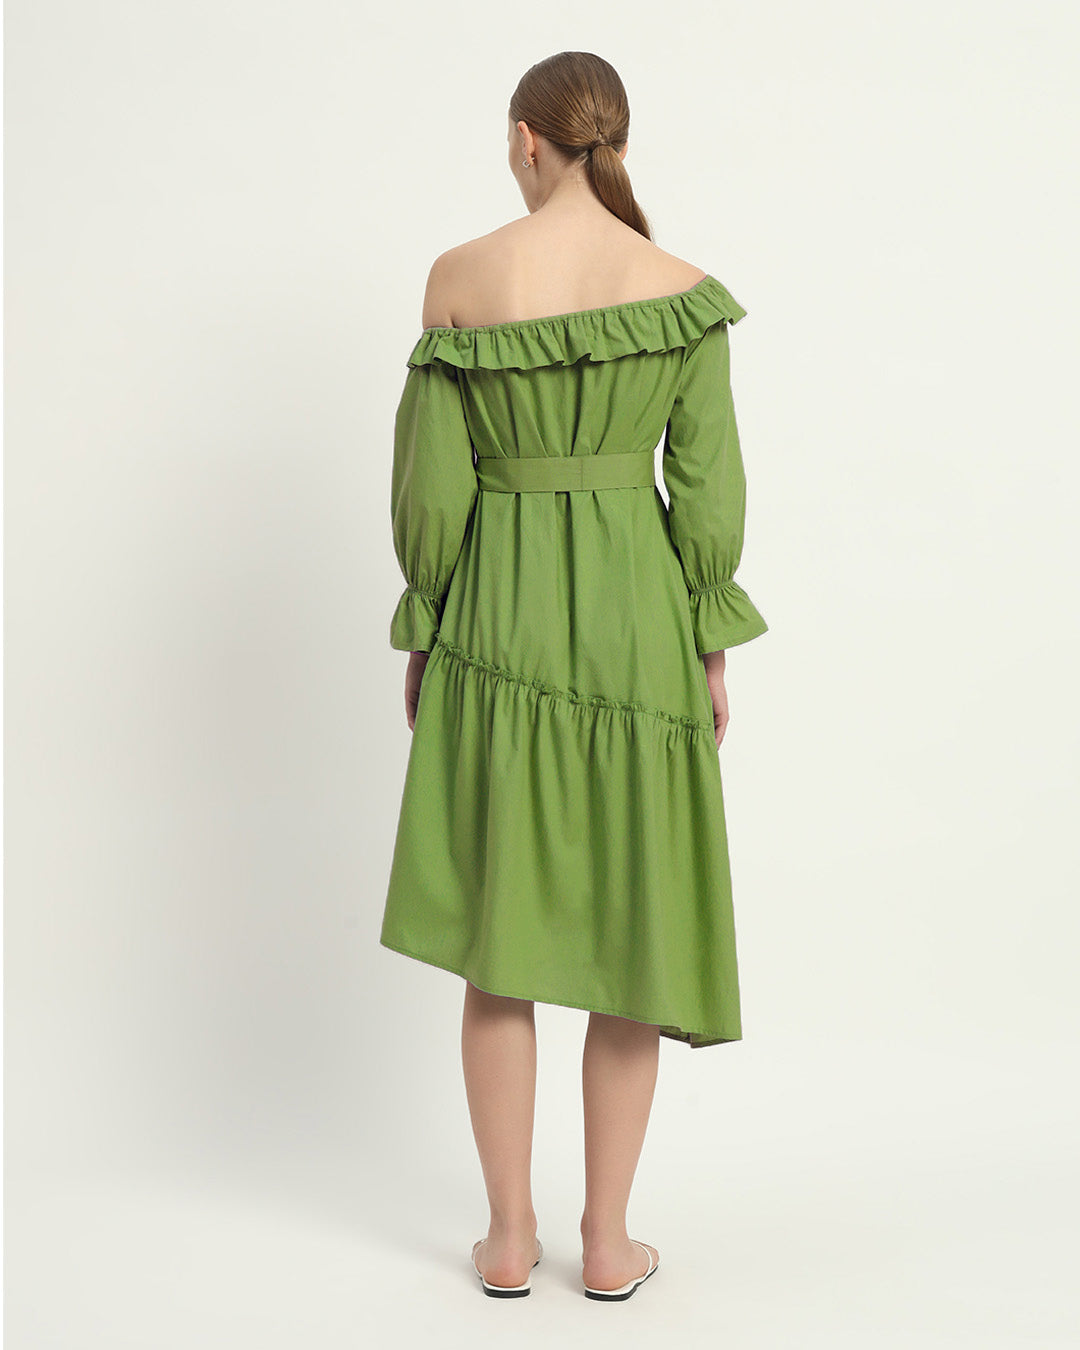 The Fern Stellata Cotton Dress